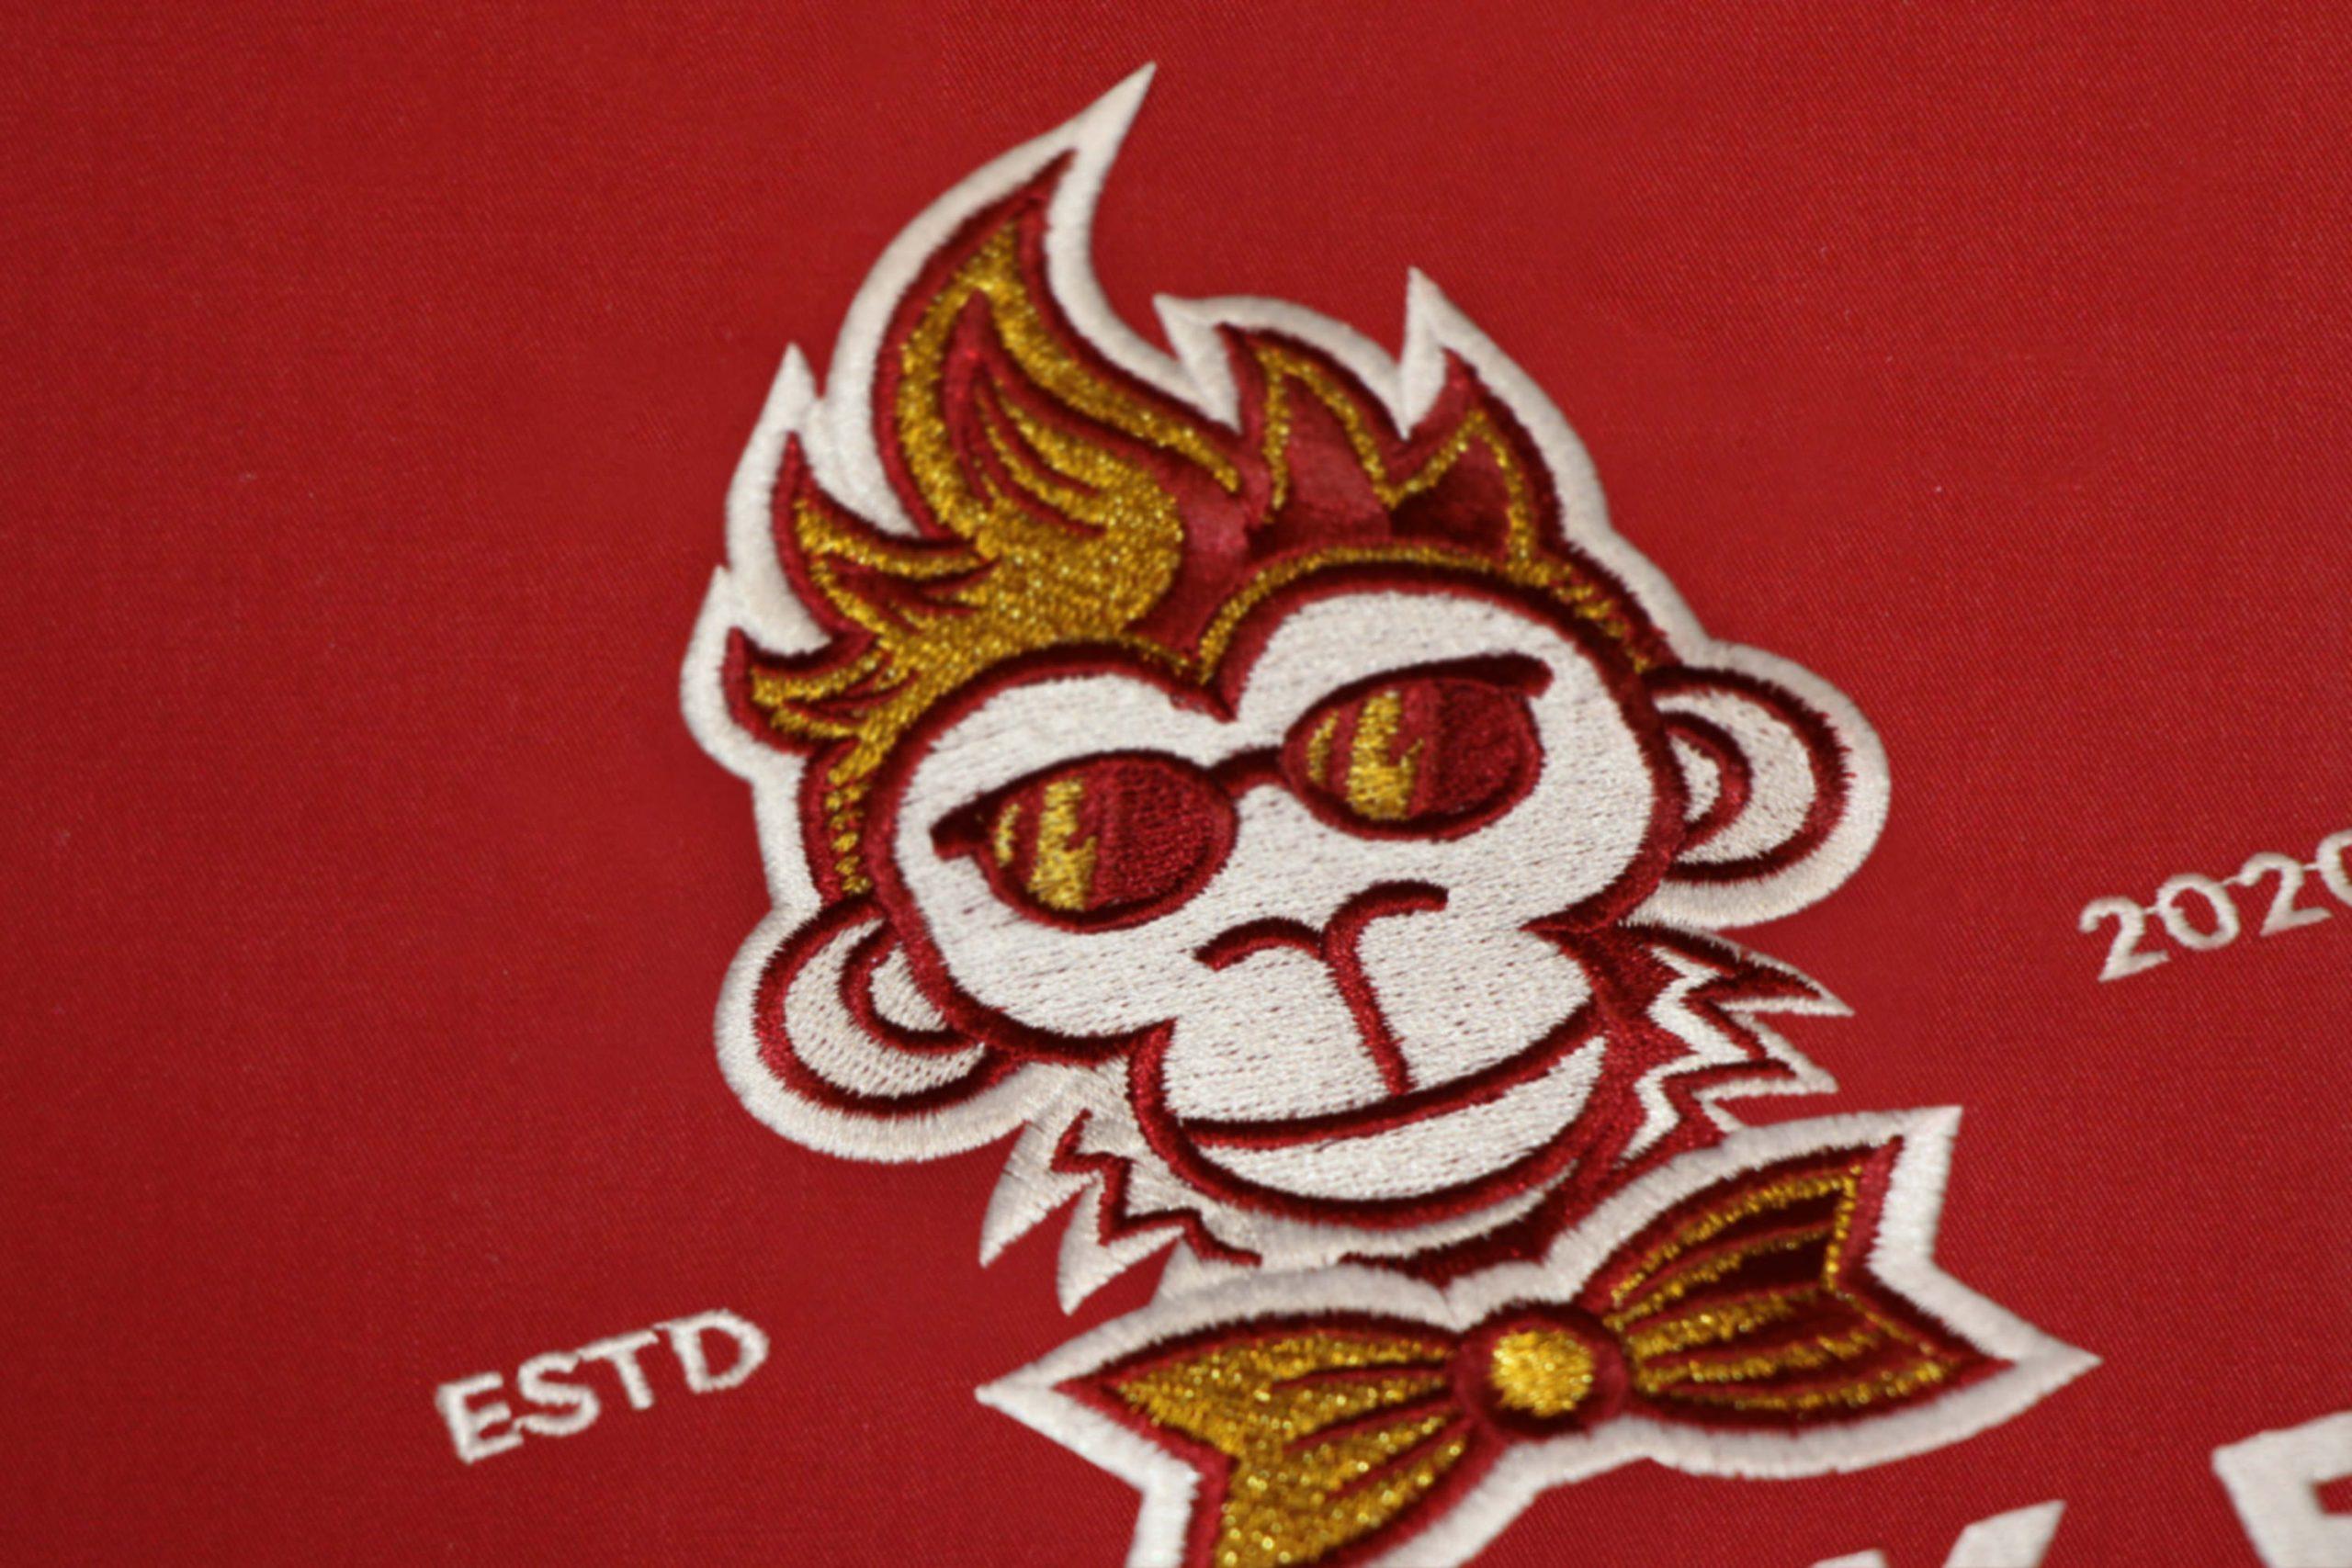 Beispiel Stick Lion Werbe GmbH - Monkey Elegance